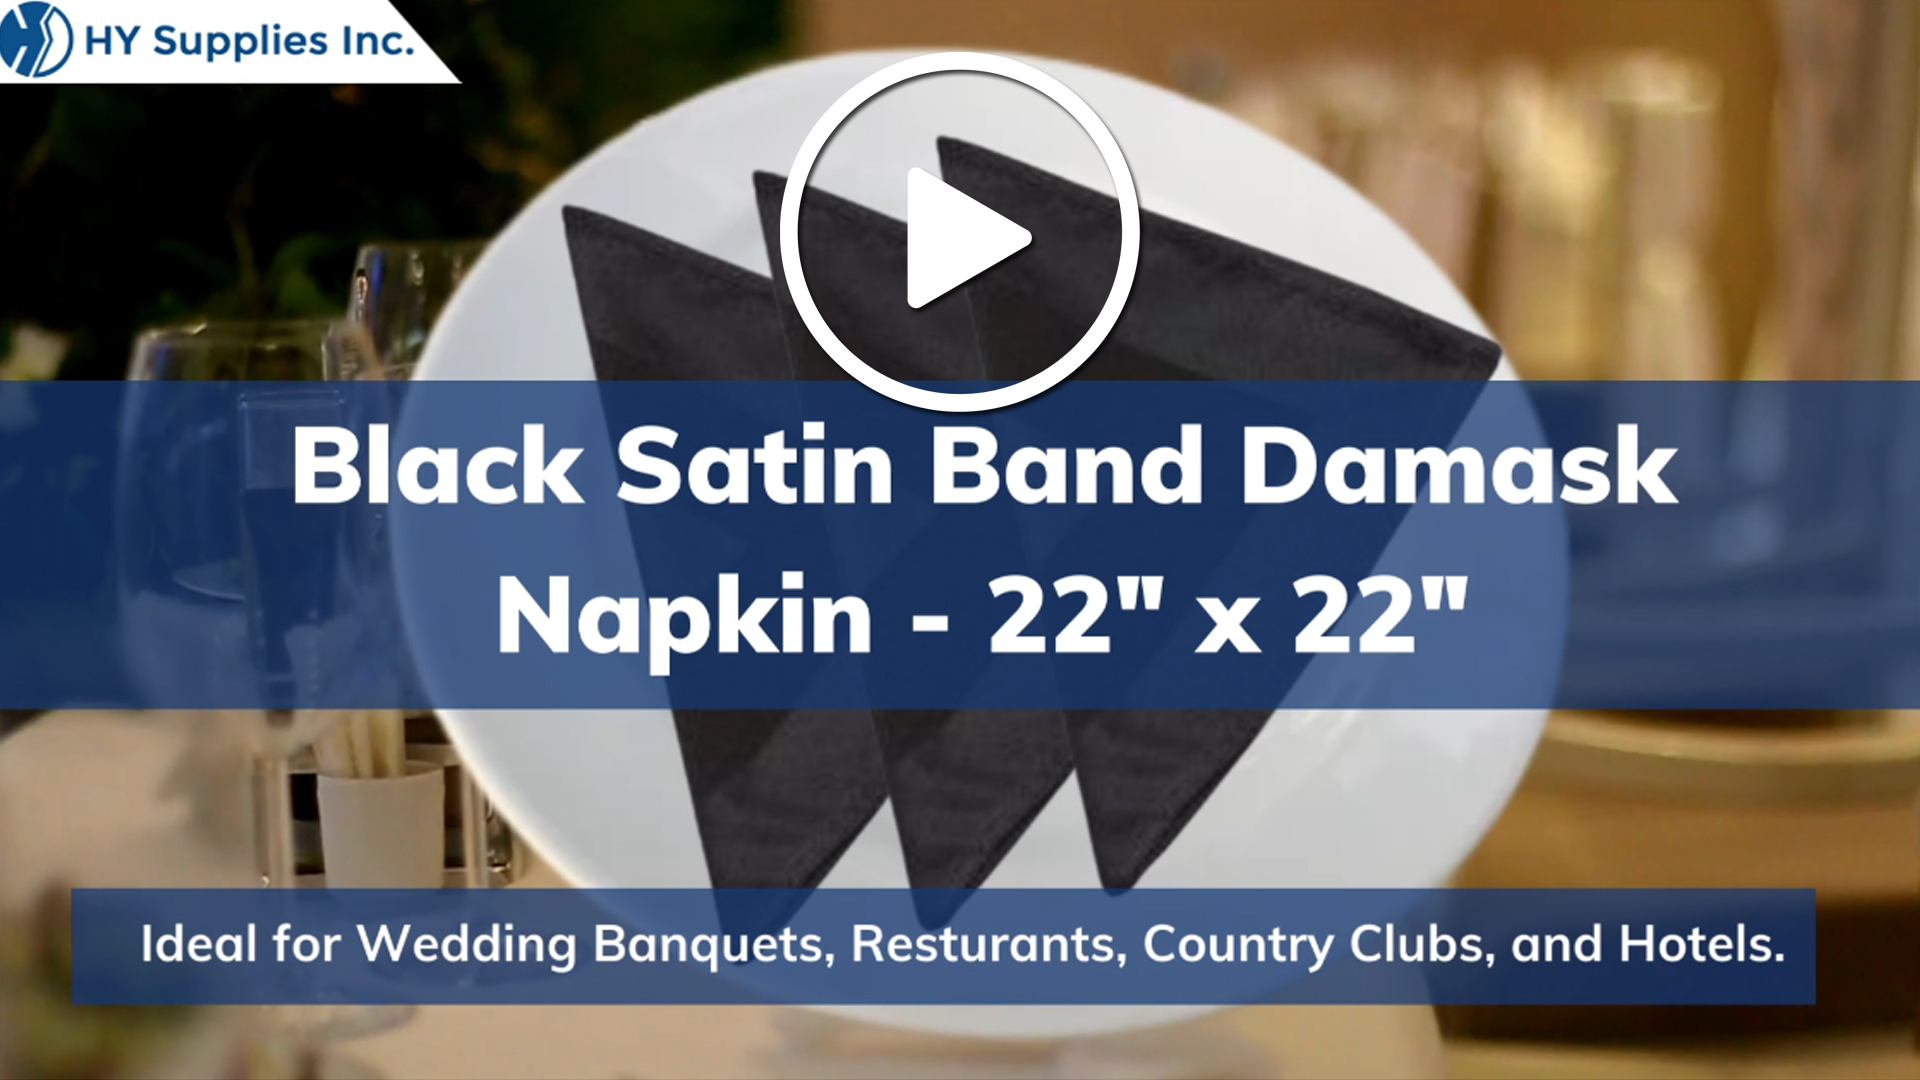 Black Satin Band Damask Napkin - 22" x 22"